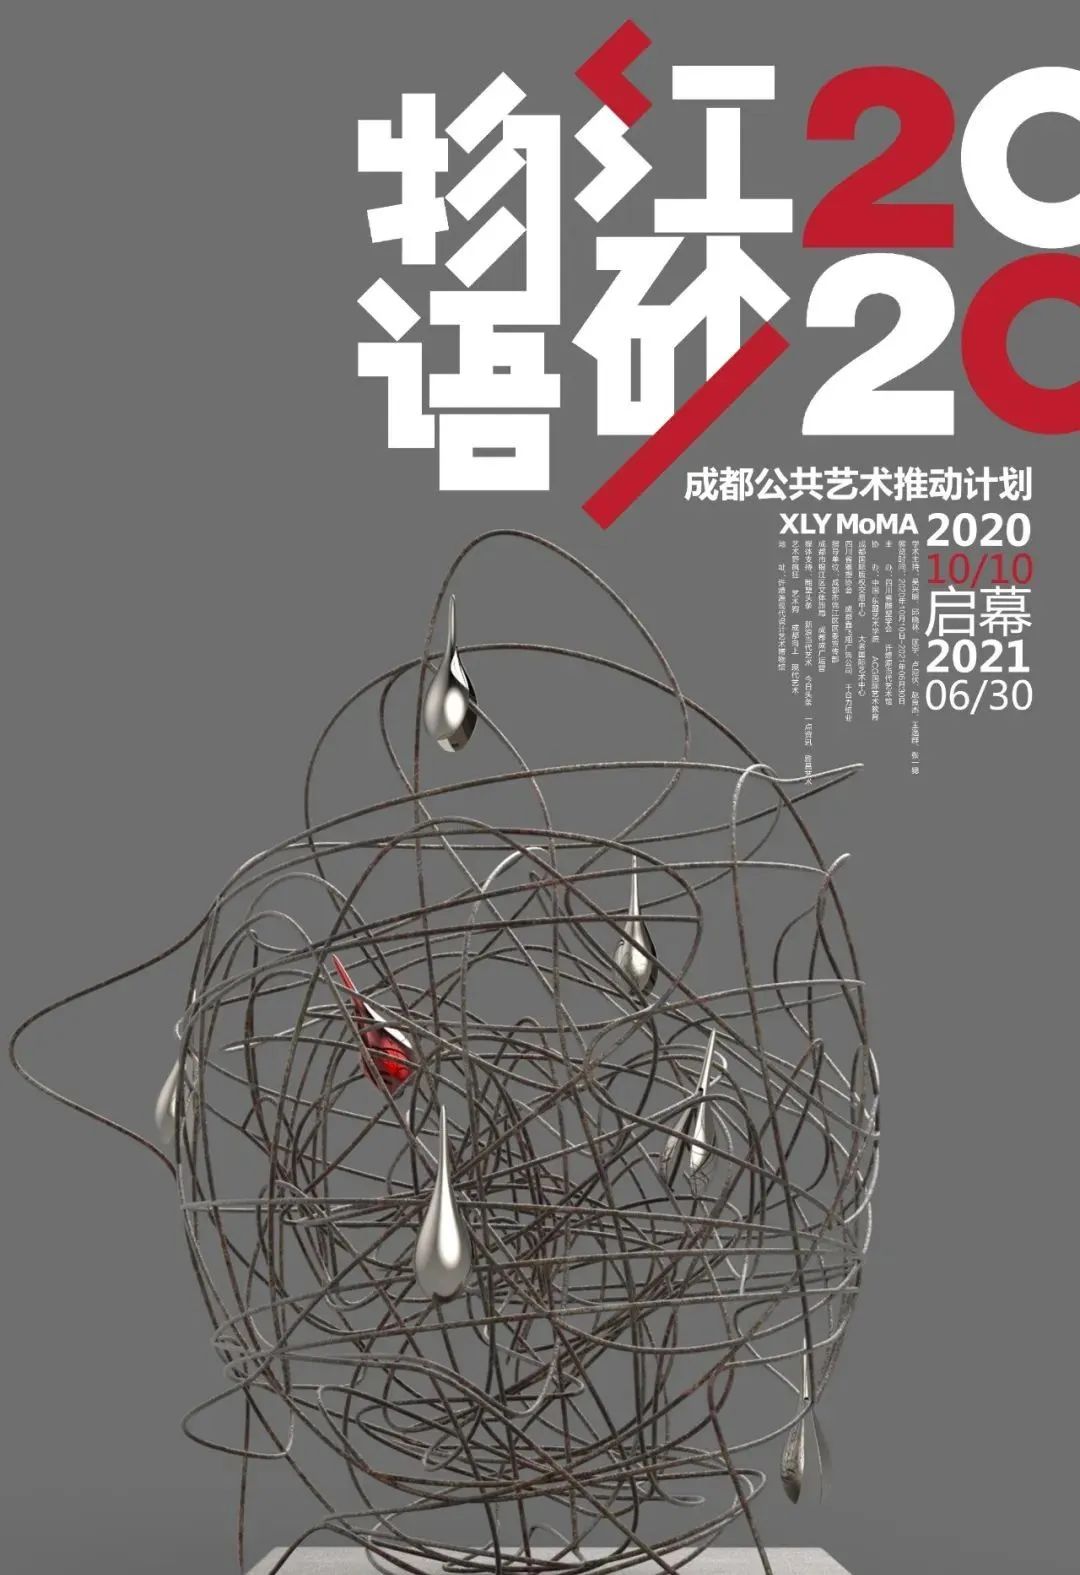 2020红砂物语公共雕塑展作品征集 共同探索未来维度